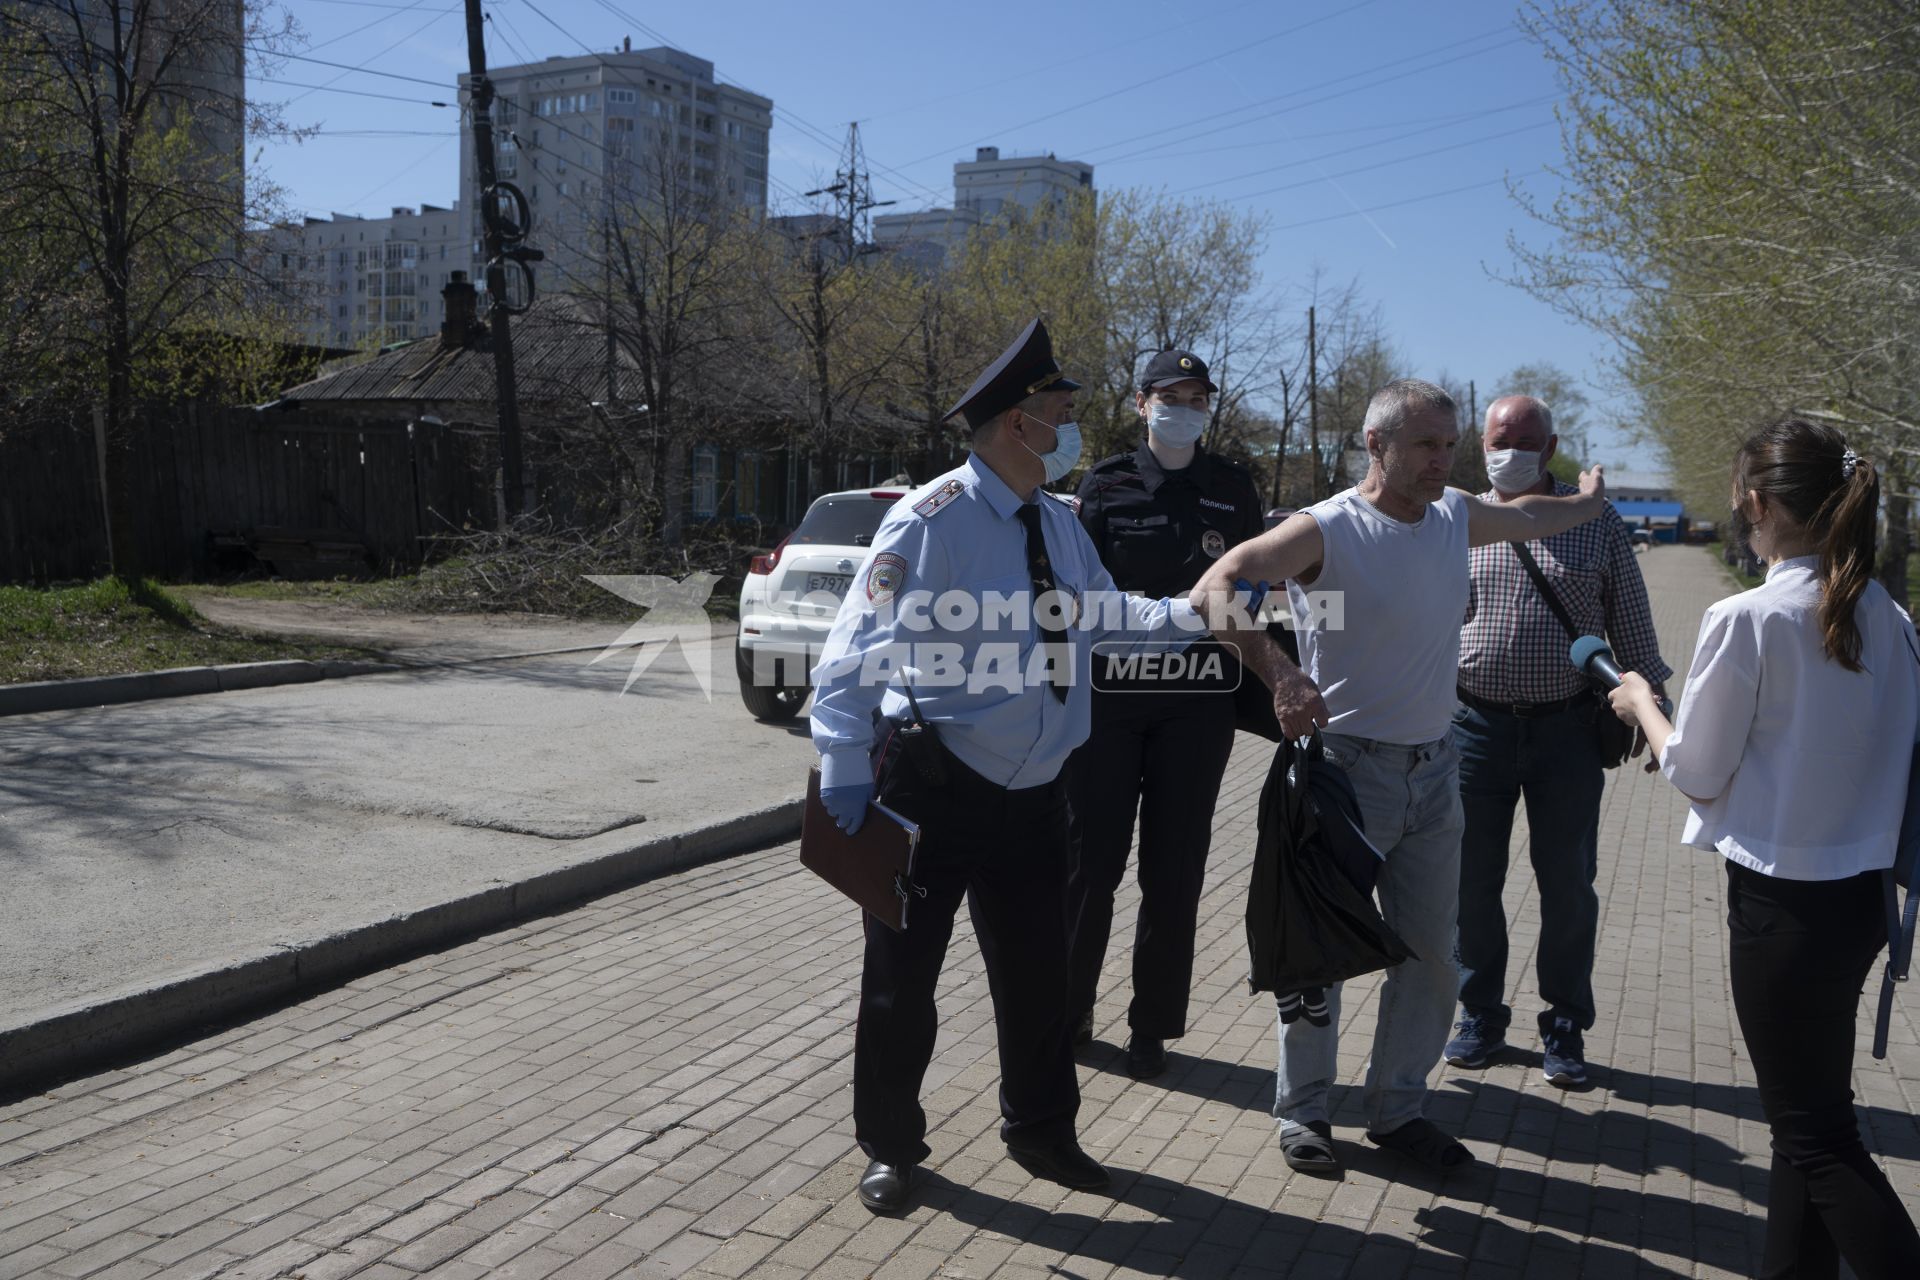 Екатеринбург. Сотрудники полиции сопровождают мужчину задержаного на пляже, за нарушение режима самоизоляции введеного для нераспространения новой коронавирусной инфекции COVID-19